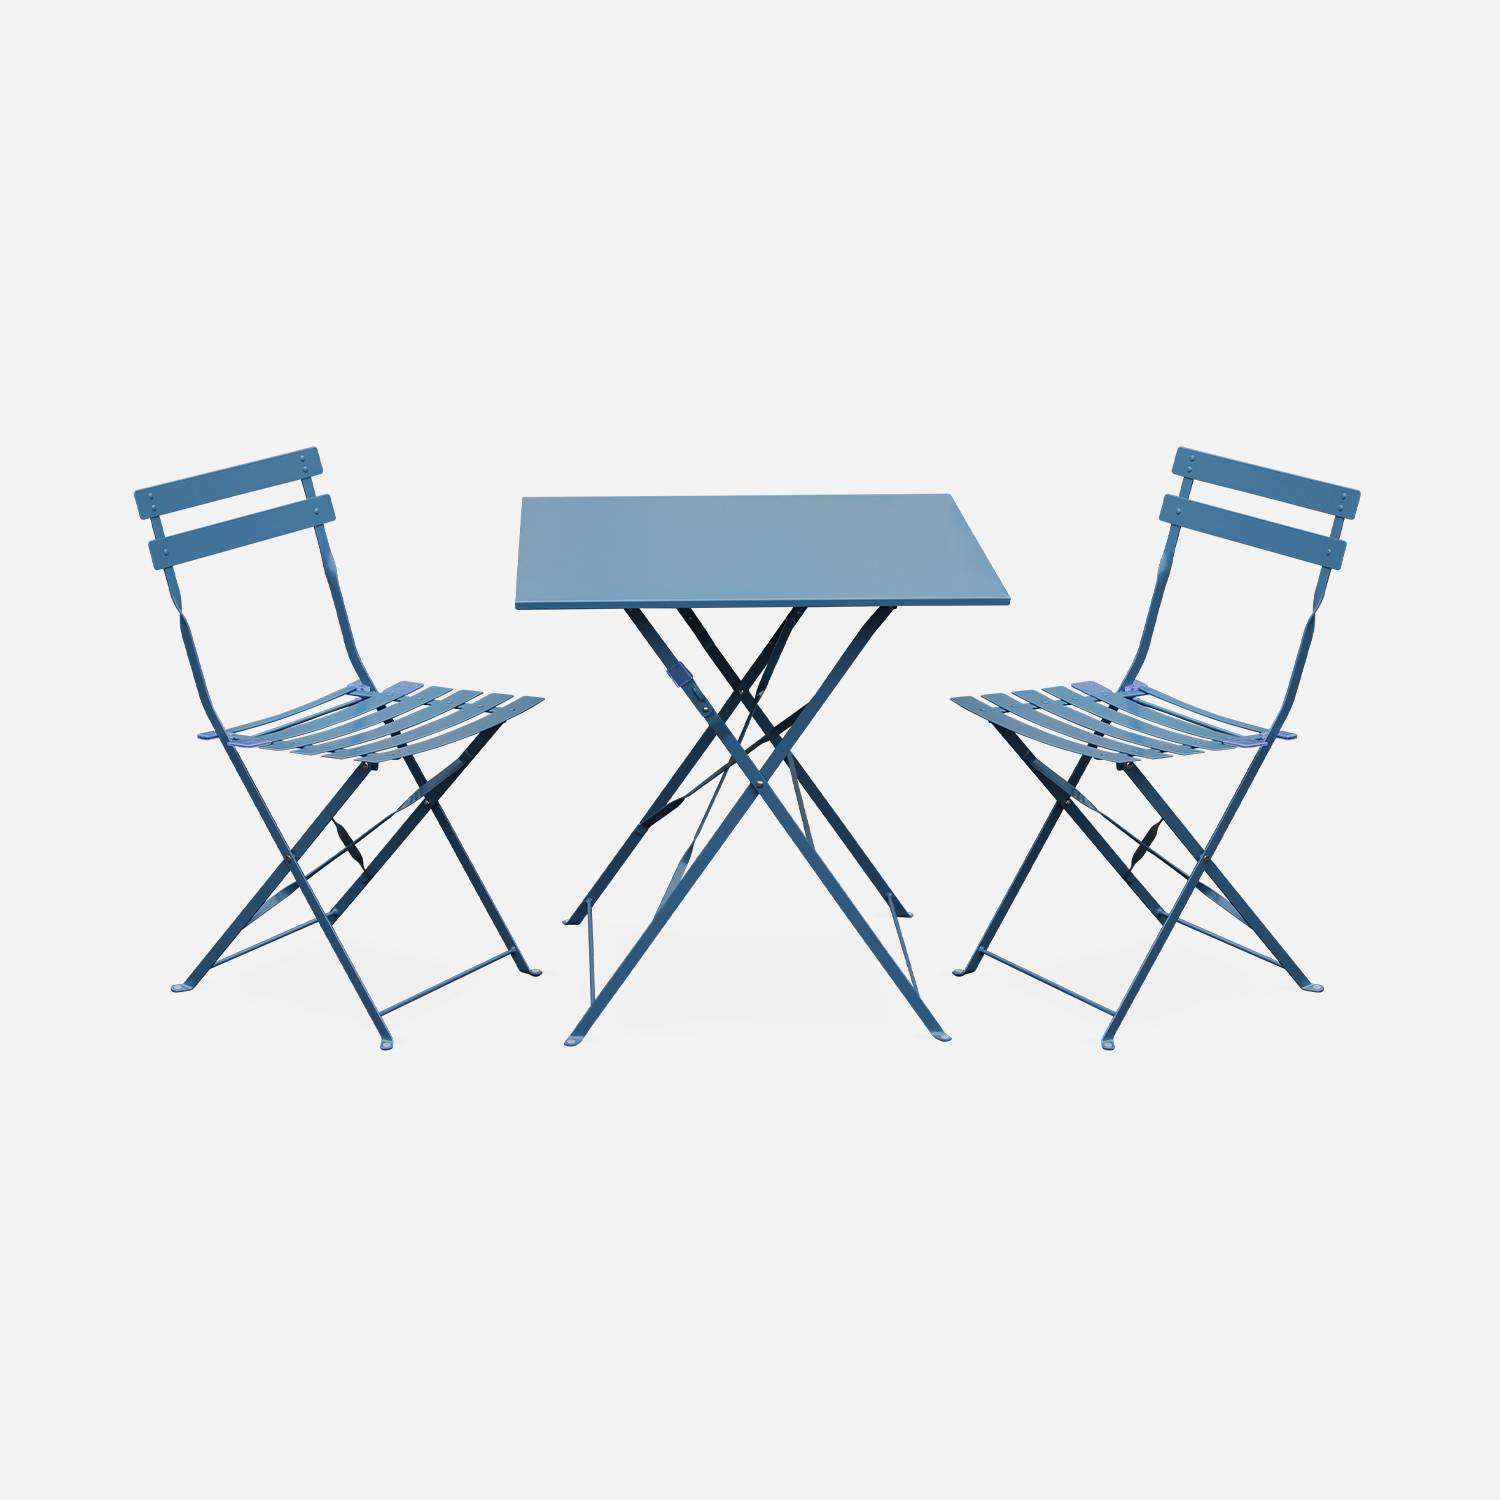 Bistro tuin set Emilia, 1 vierkante tafel en 2 opklapbare stoelen van staal - blauwgrijs | sweeek